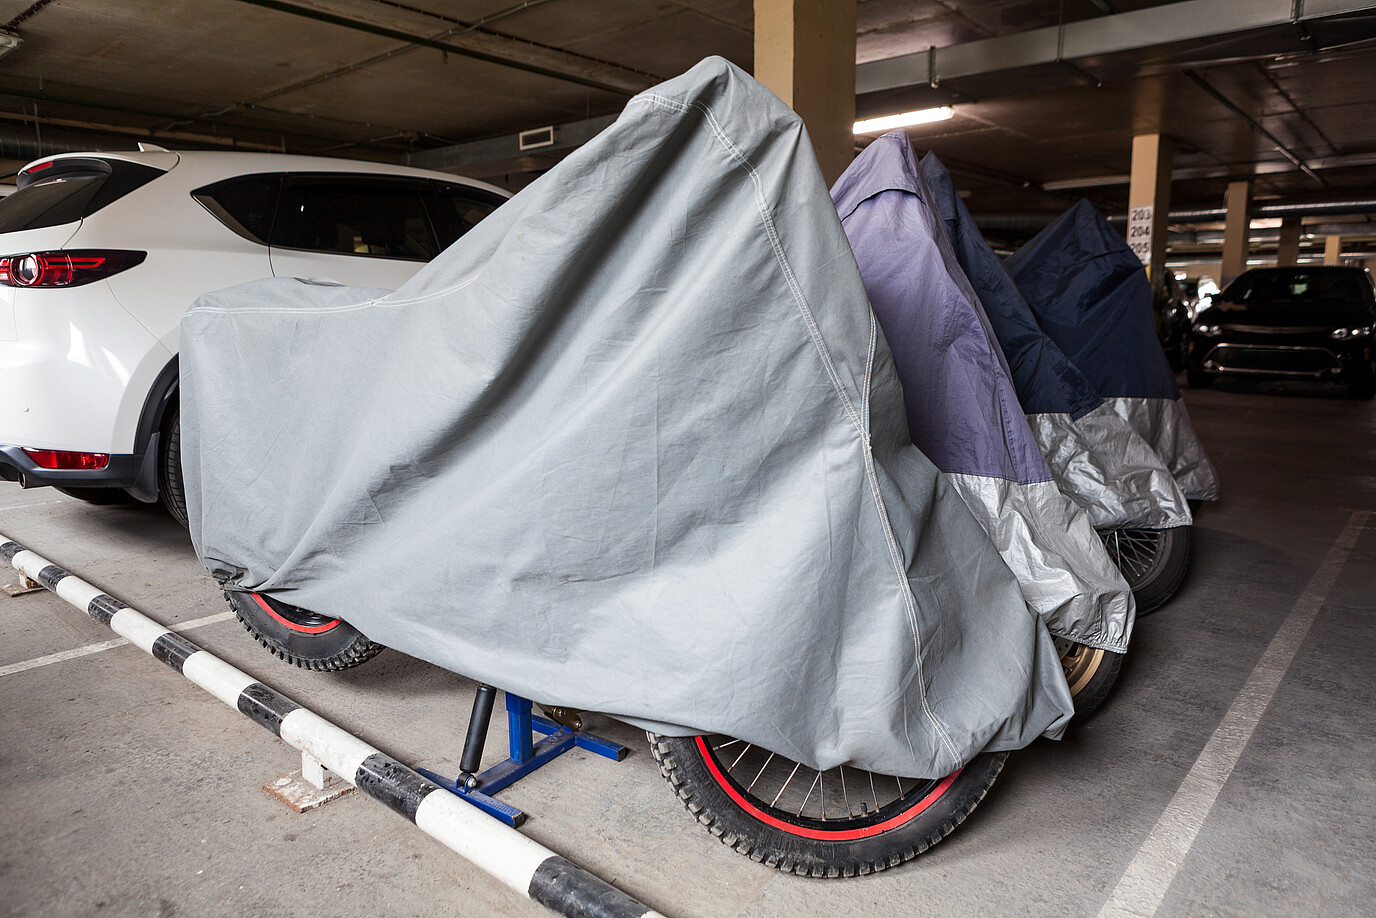 Motorräder stehen mit einer Plane abgedeckt in einer Garage